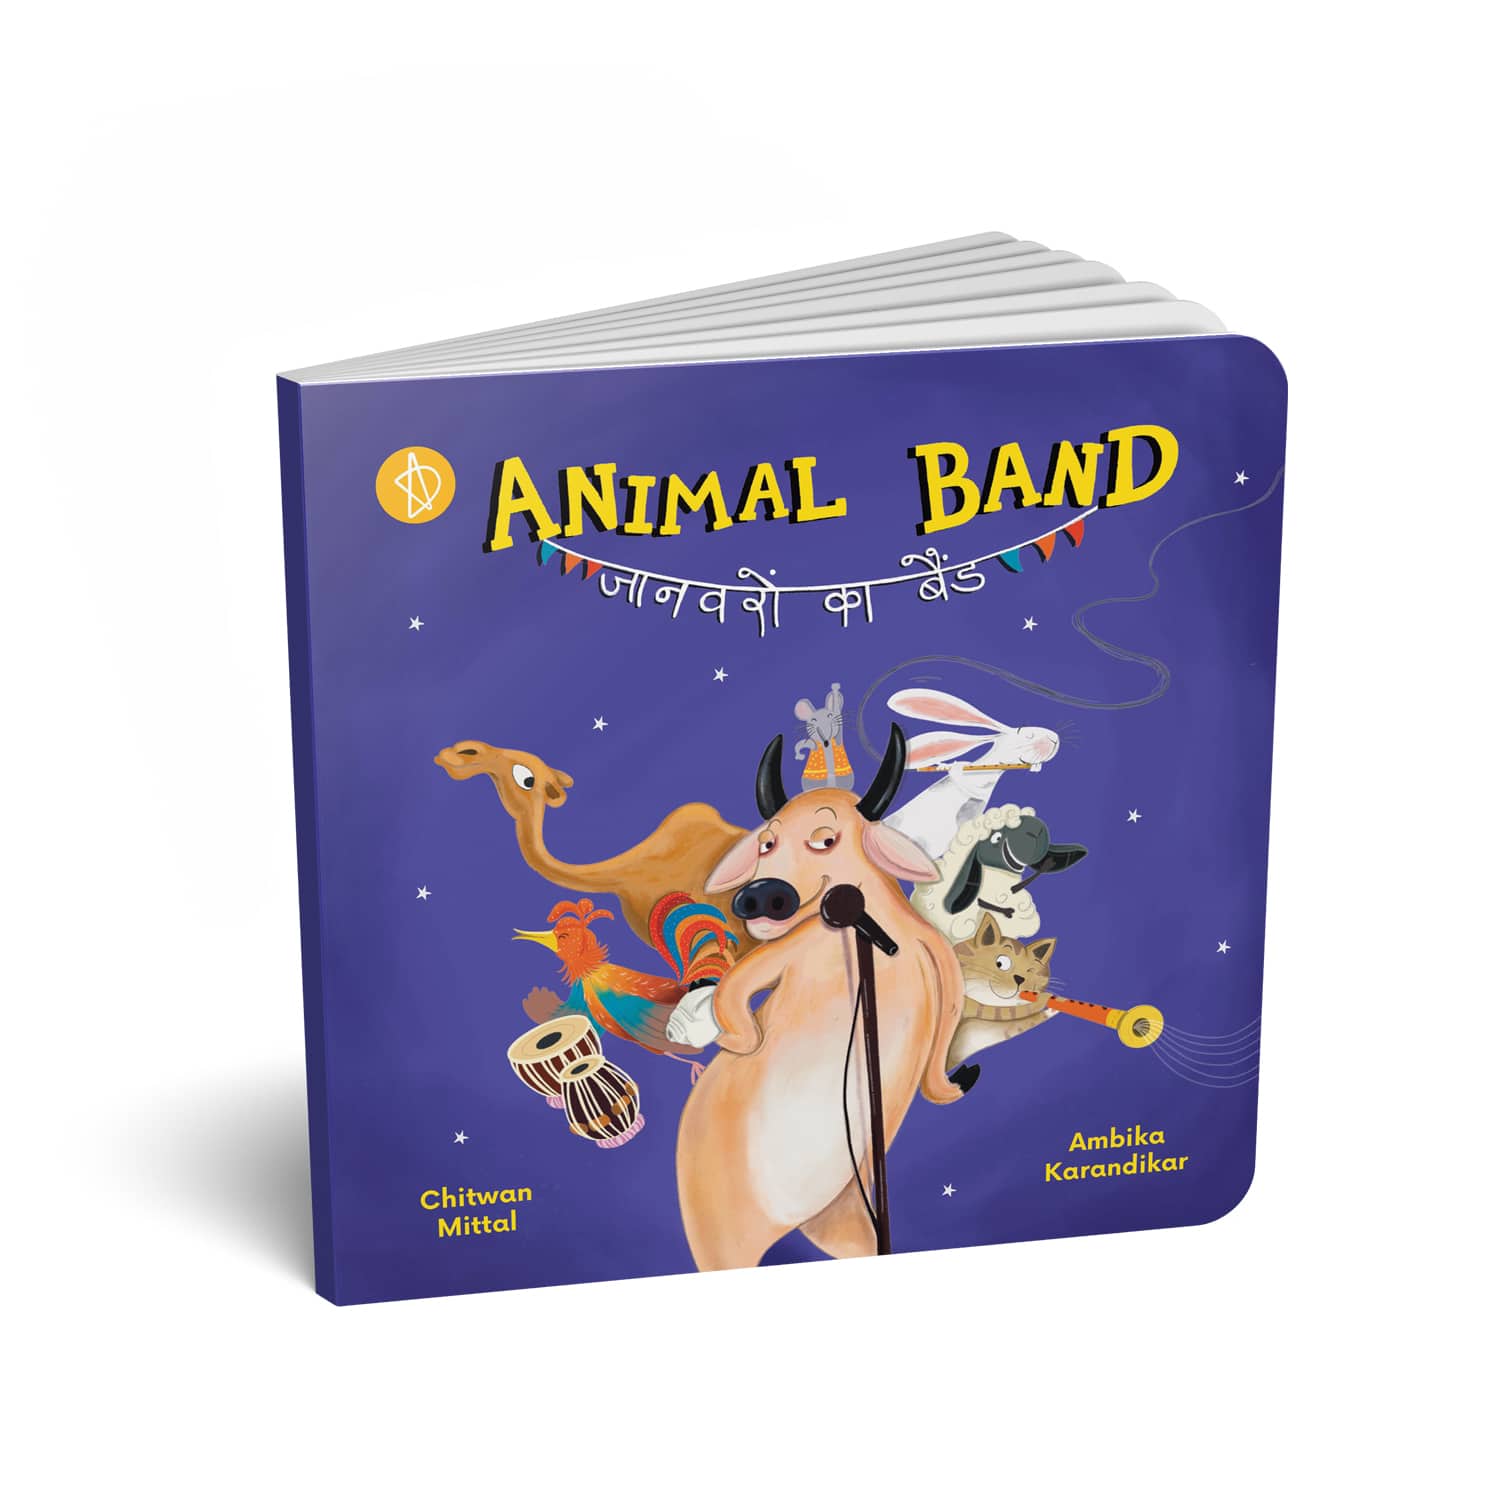 Animal band